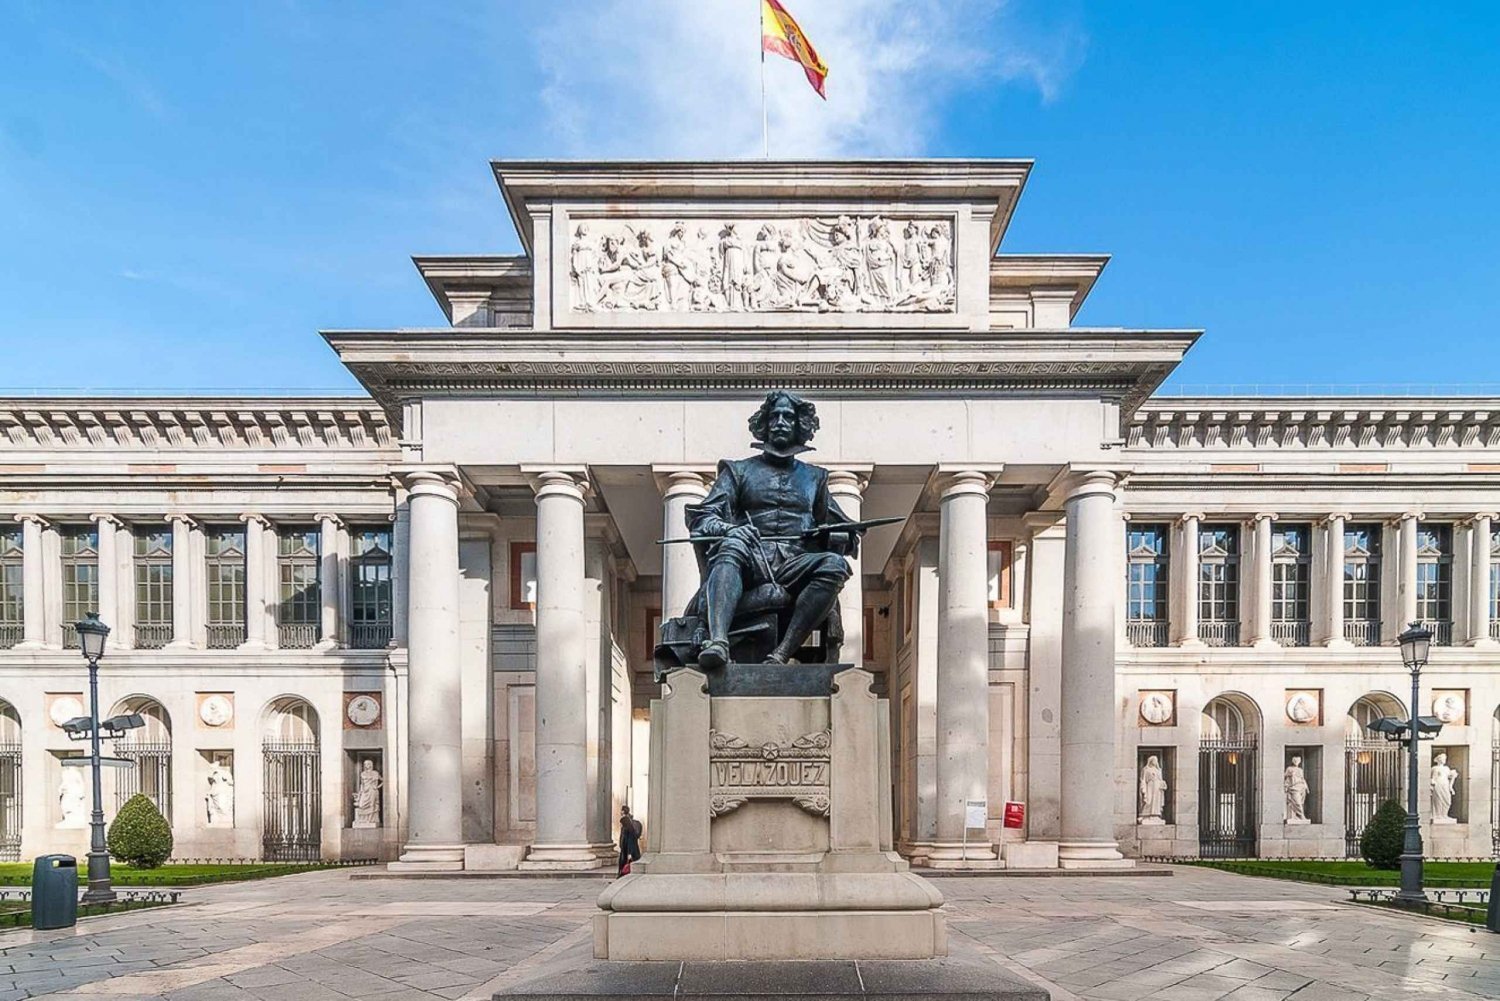 Madri: Excursão a pé pelo Museu do Prado e pelo Palácio Real